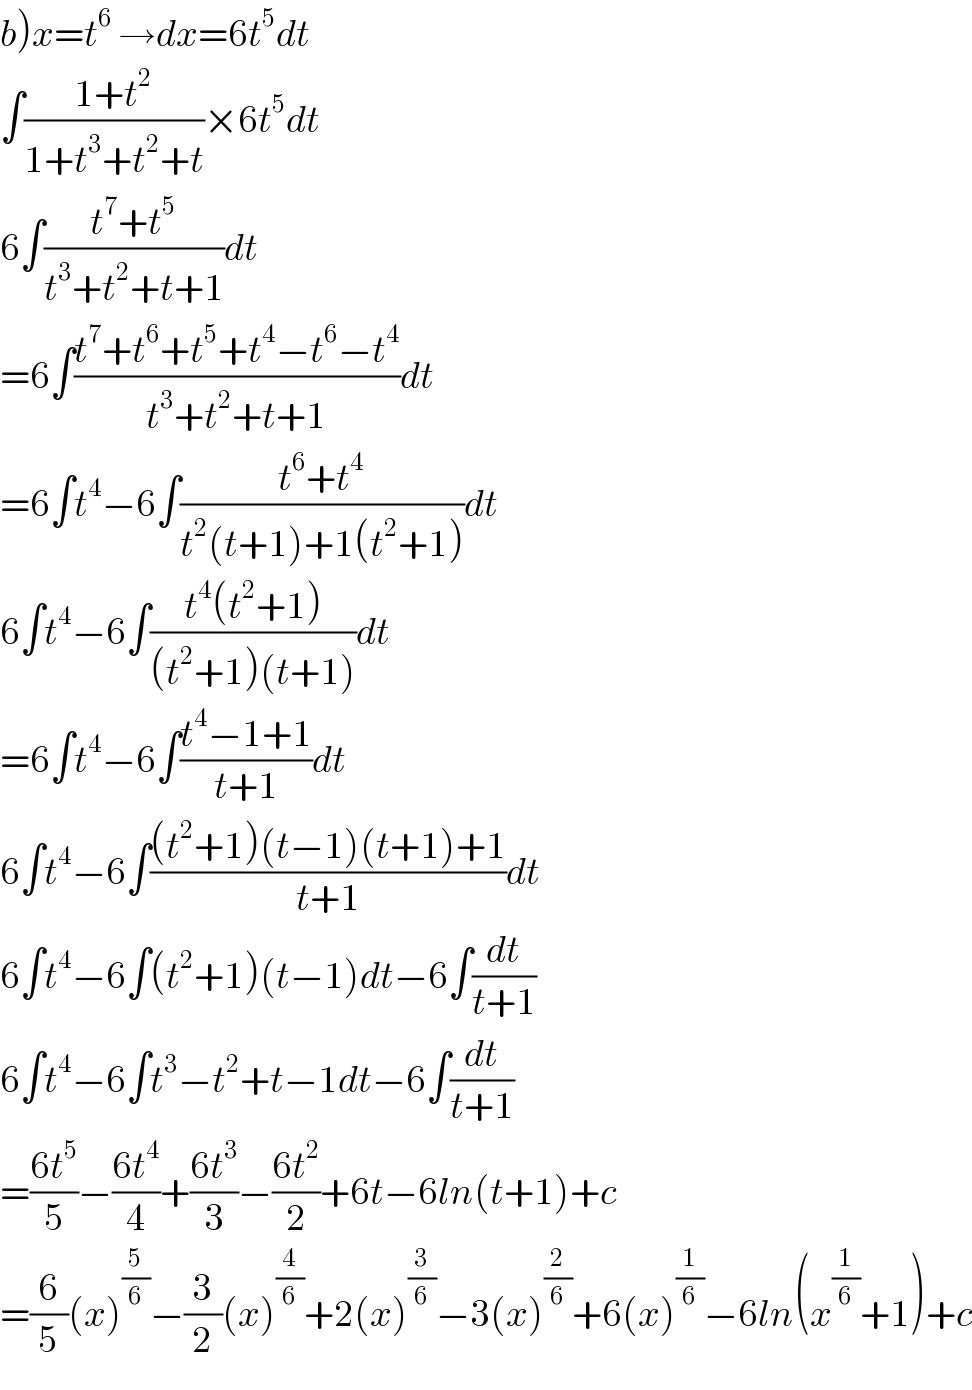 b)x=t^6  →dx=6t^5 dt  ∫((1+t^2 )/(1+t^3 +t^2 +t))×6t^5 dt  6∫((t^7 +t^5 )/(t^3 +t^2 +t+1))dt  =6∫((t^7 +t^6 +t^5 +t^4 −t^6 −t^4 )/(t^3 +t^2 +t+1))dt  =6∫t^4 −6∫((t^6 +t^4 )/(t^2 (t+1)+1(t^2 +1)))dt  6∫t^4 −6∫((t^4 (t^2 +1))/((t^2 +1)(t+1)))dt  =6∫t^4 −6∫((t^4 −1+1)/(t+1))dt  6∫t^4 −6∫(((t^2 +1)(t−1)(t+1)+1)/(t+1))dt  6∫t^4 −6∫(t^2 +1)(t−1)dt−6∫(dt/(t+1))  6∫t^4 −6∫t^3 −t^2 +t−1dt−6∫(dt/(t+1))  =((6t^5 )/5)−((6t^4 )/4)+((6t^3 )/3)−((6t^2 )/2)+6t−6ln(t+1)+c  =(6/5)(x)^(5/6) −(3/2)(x)^(4/6) +2(x)^(3/6) −3(x)^(2/6) +6(x)^(1/6) −6ln(x^(1/6) +1)+c  